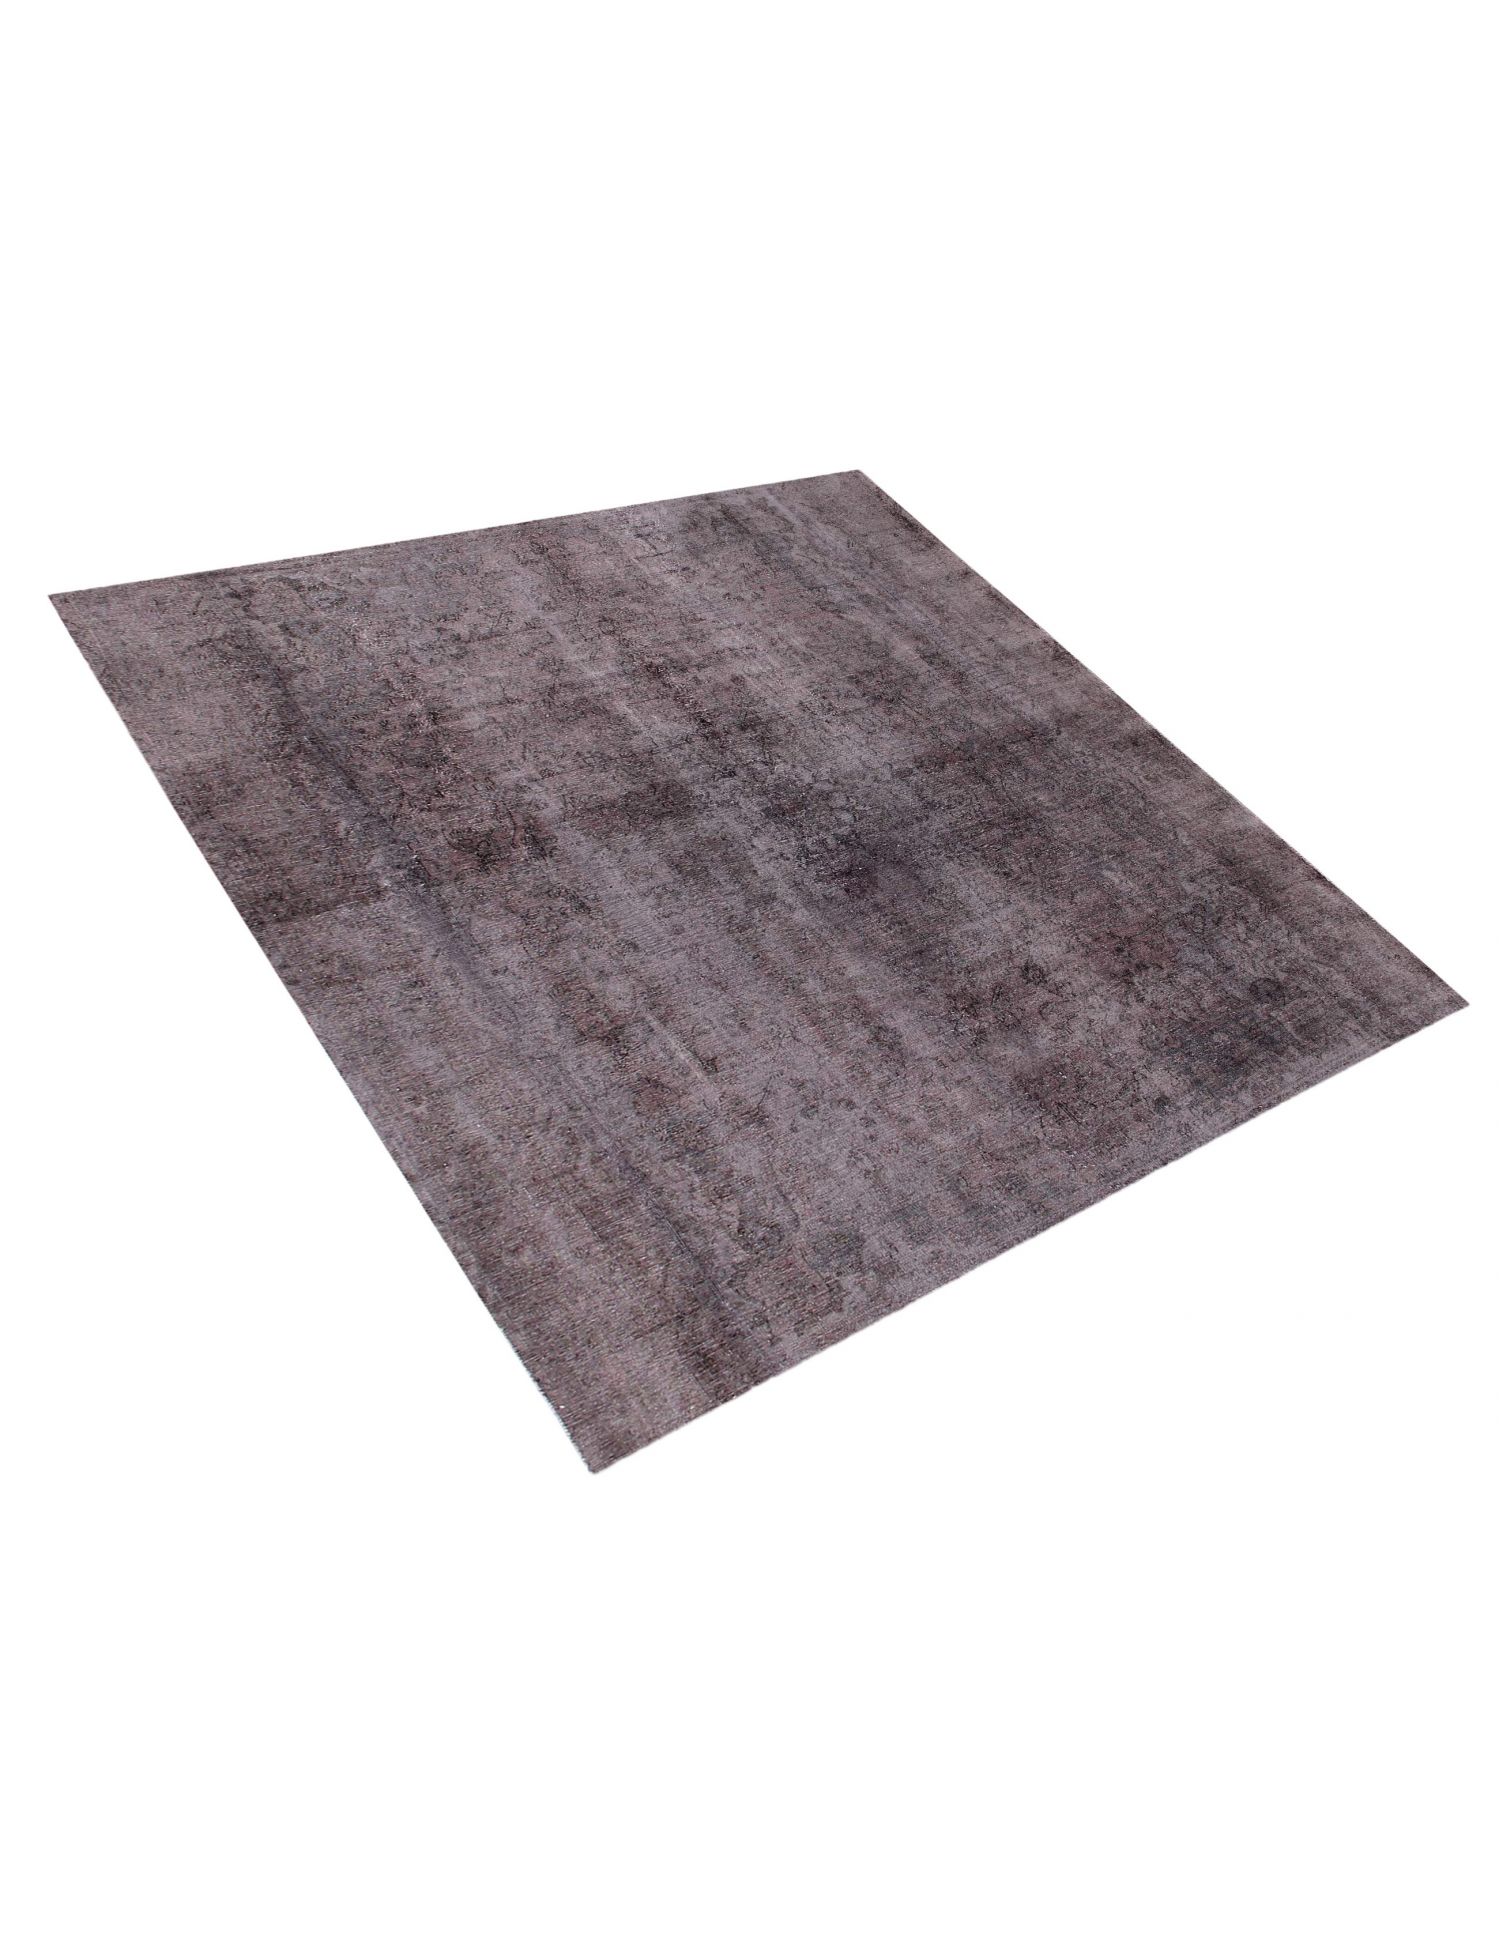 Persischer Vintage Teppich  grau <br/>290 x 290 cm